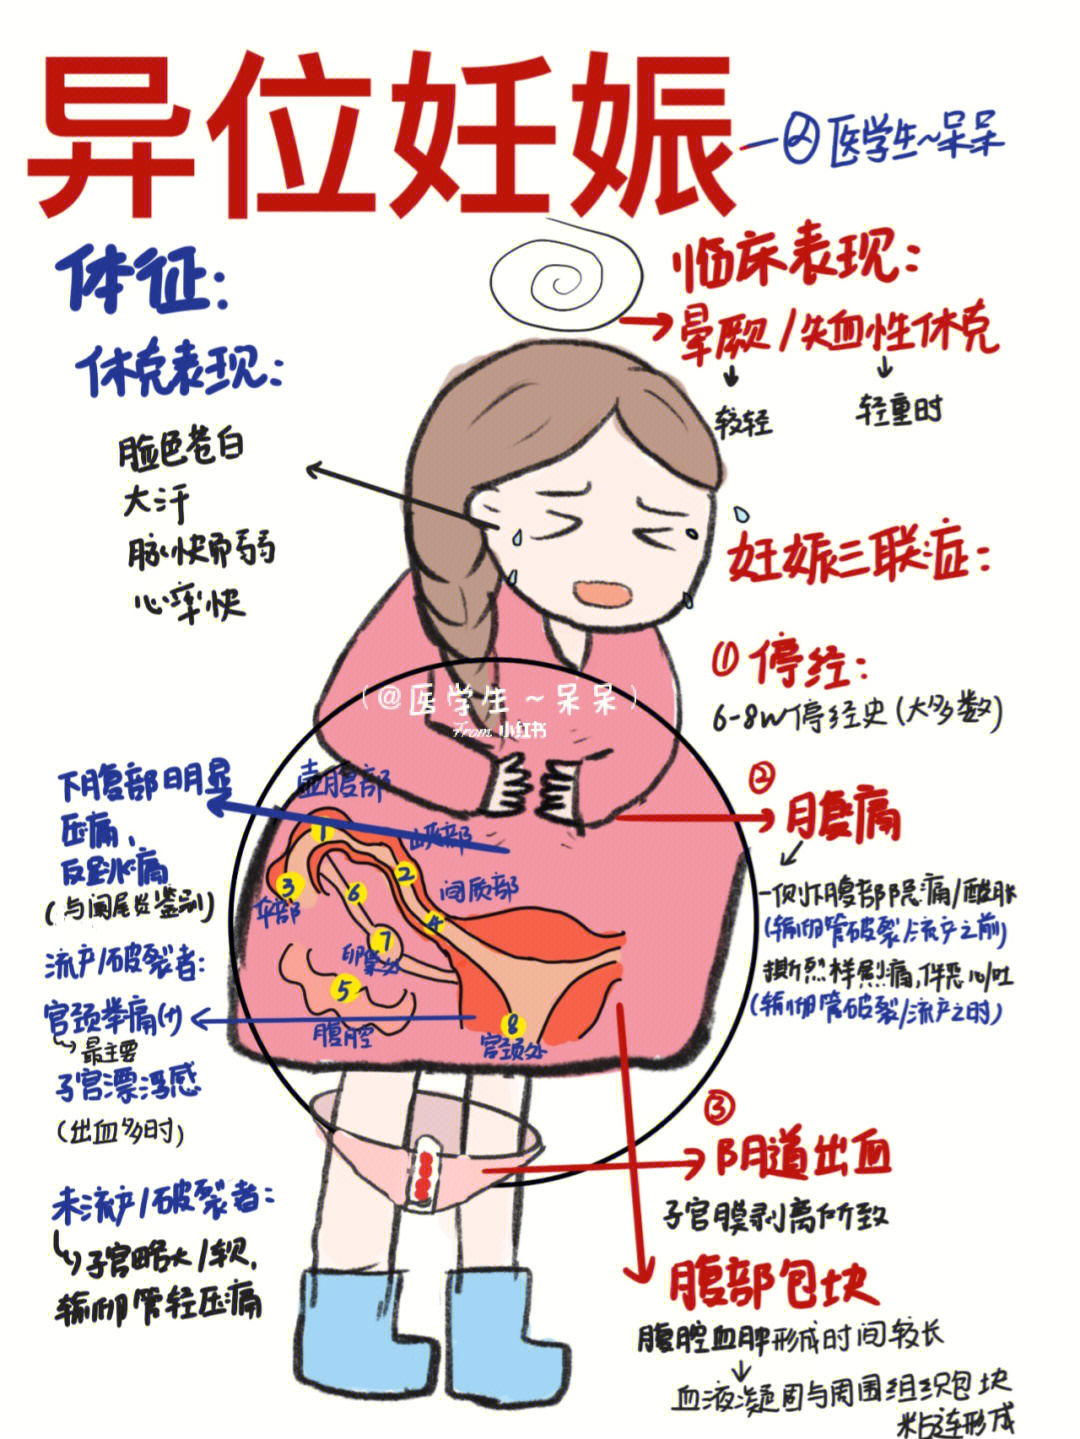 实习异位妊娠(宫外孕):96当月经规律育龄期女性出现月经停经,腹痛